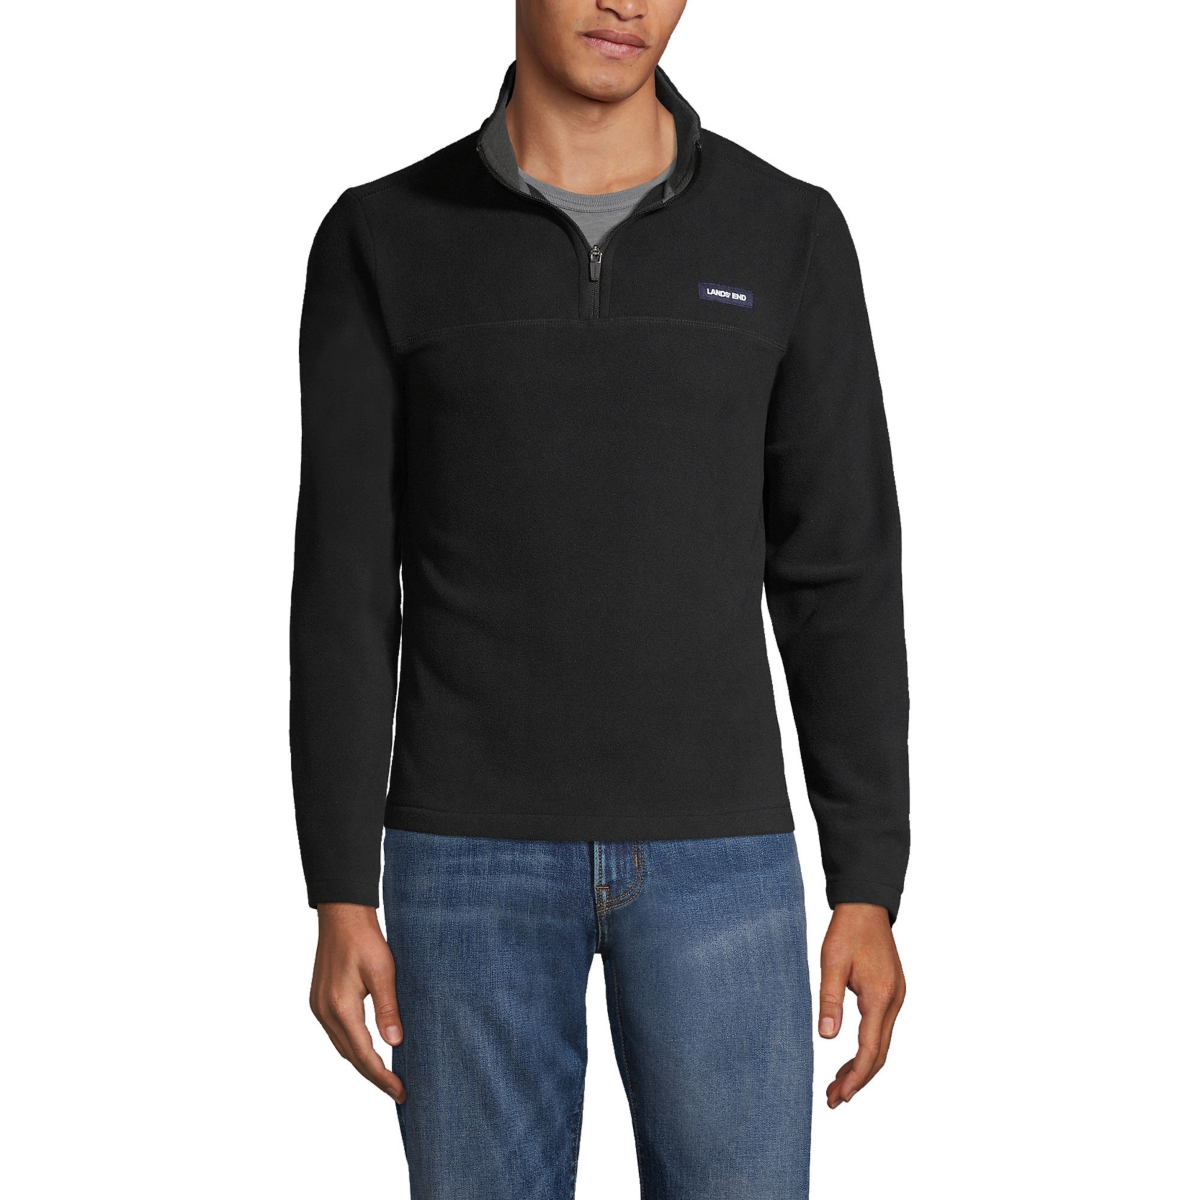 Men's Fleece Quarter Zip Pullover Jacket - Dark charcoal heather